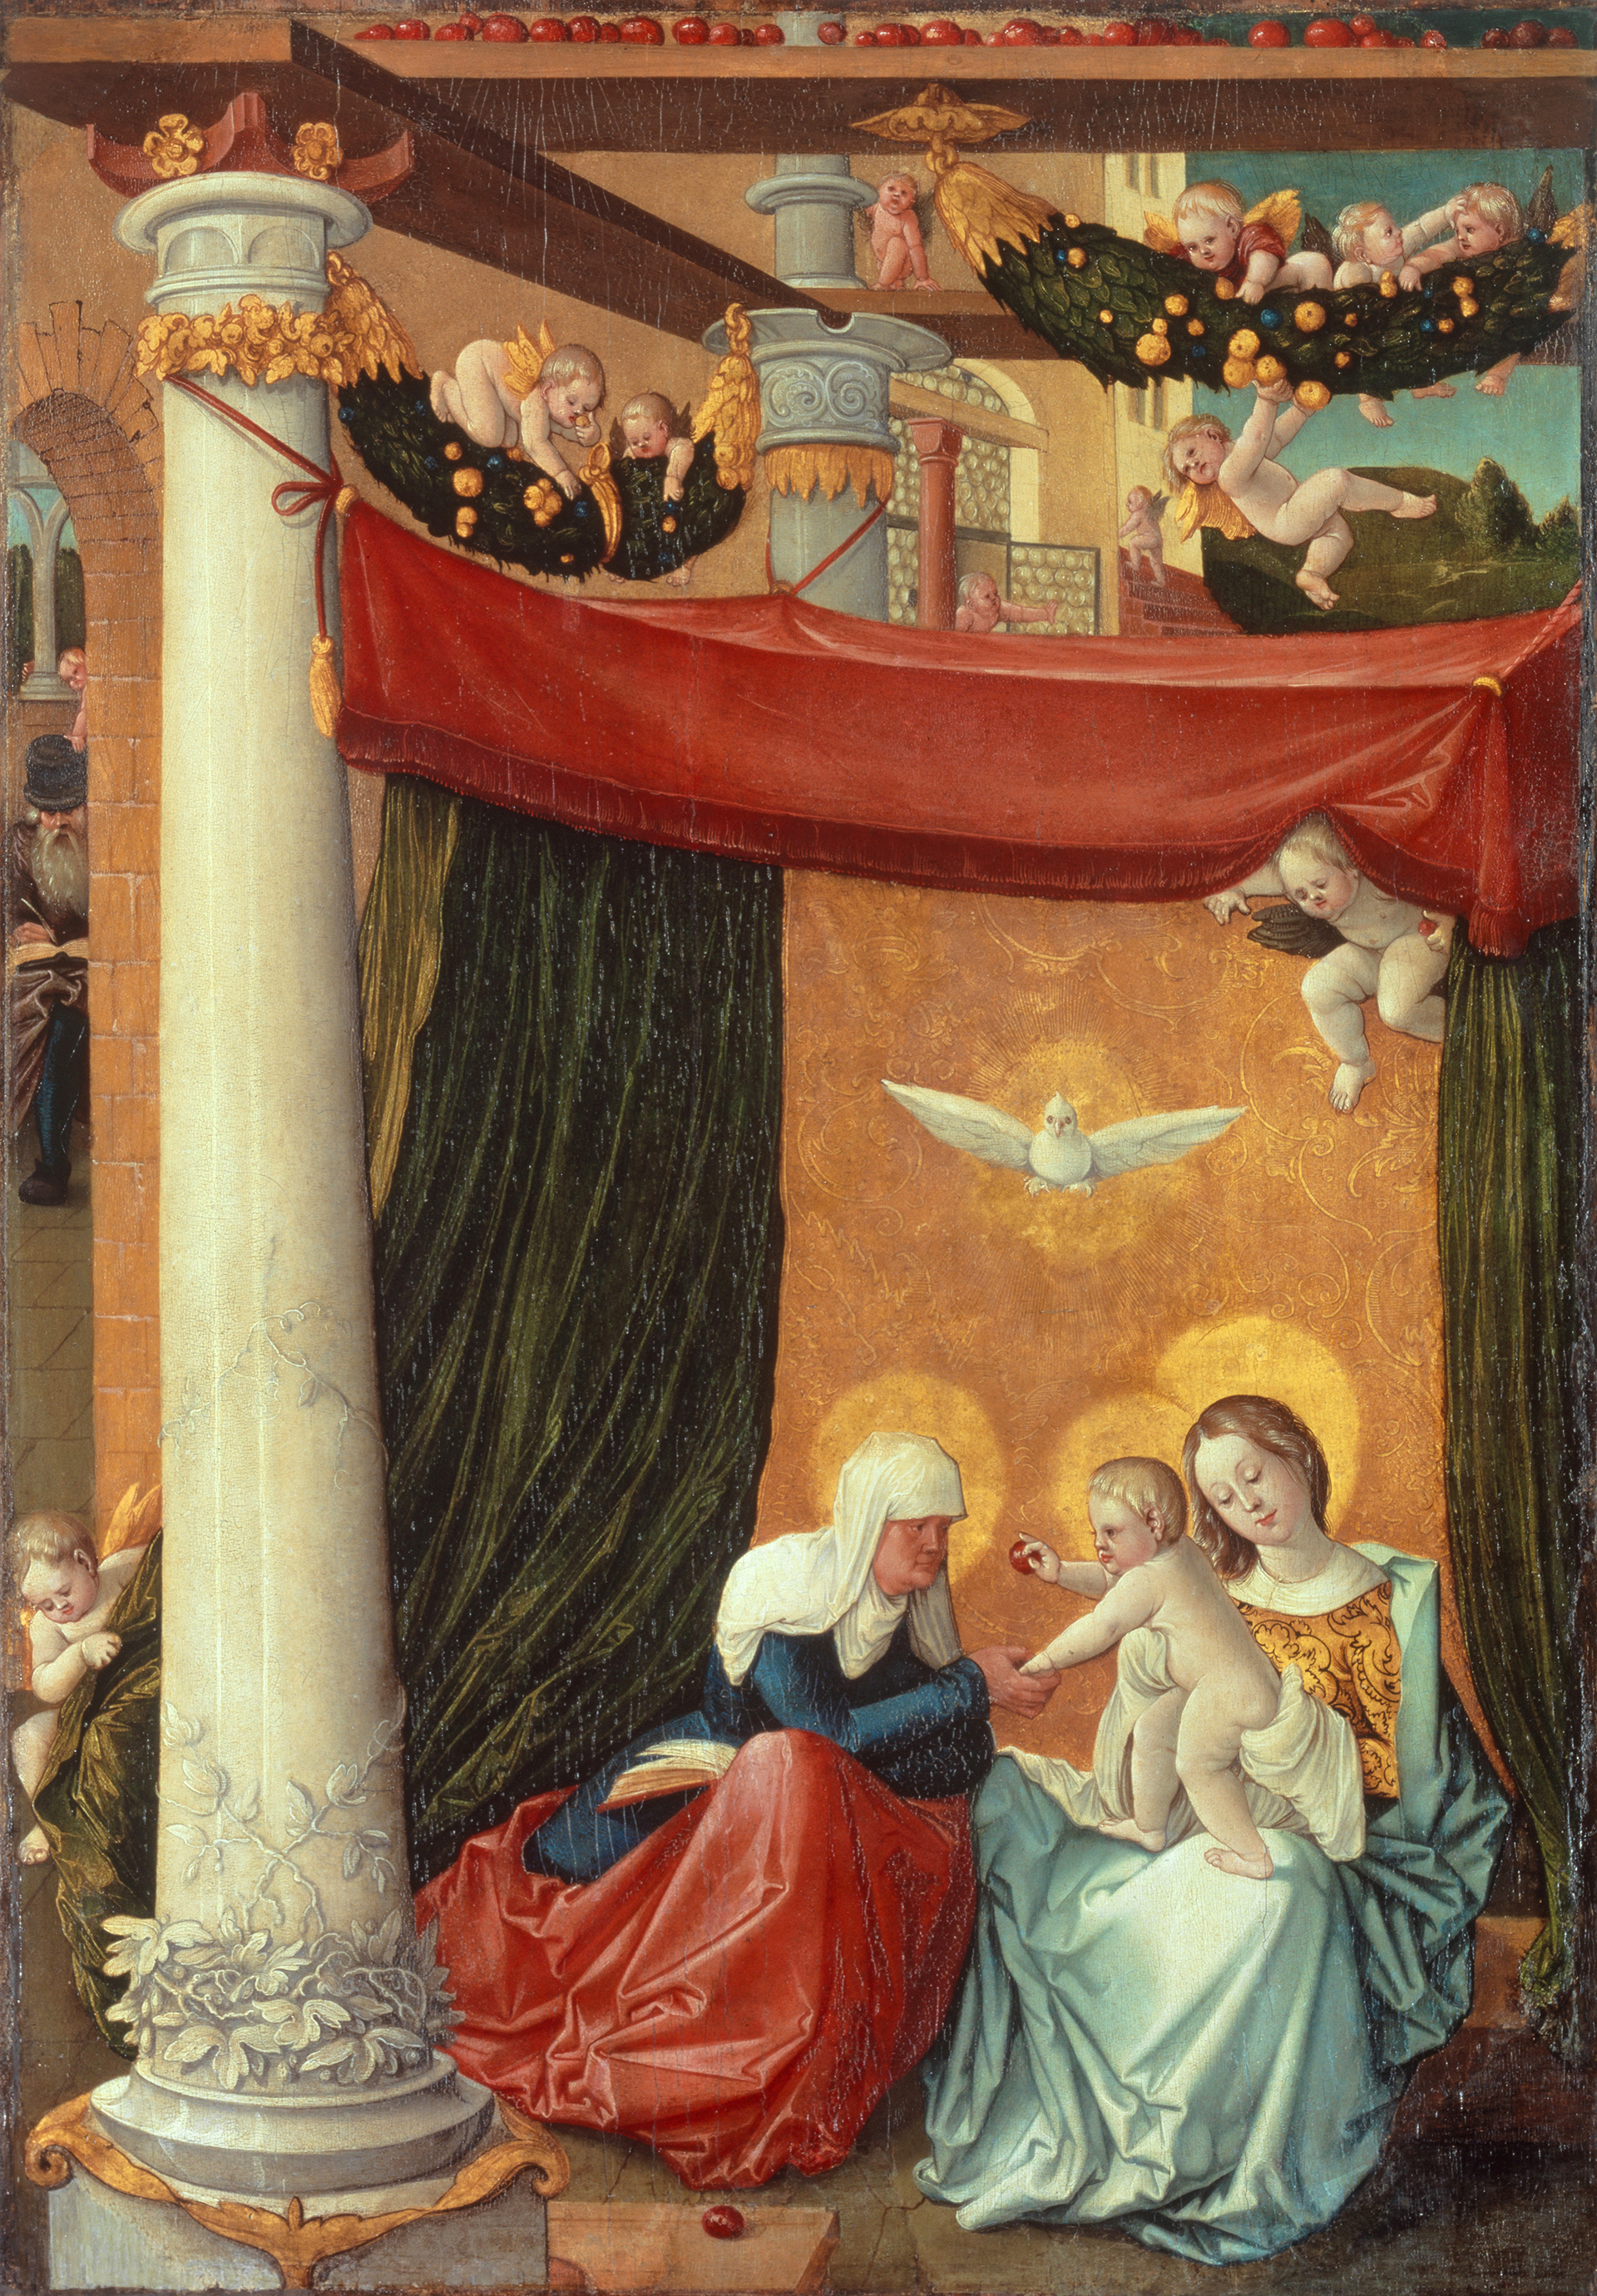 Abbildung des Werks "Die heilige Anna Selbdritt" von Hans Baldung Grien, entstanden um 1512 und 1515. Maria mit dem Jesuskind und einer Frau sitzen unter einem Baldachin.